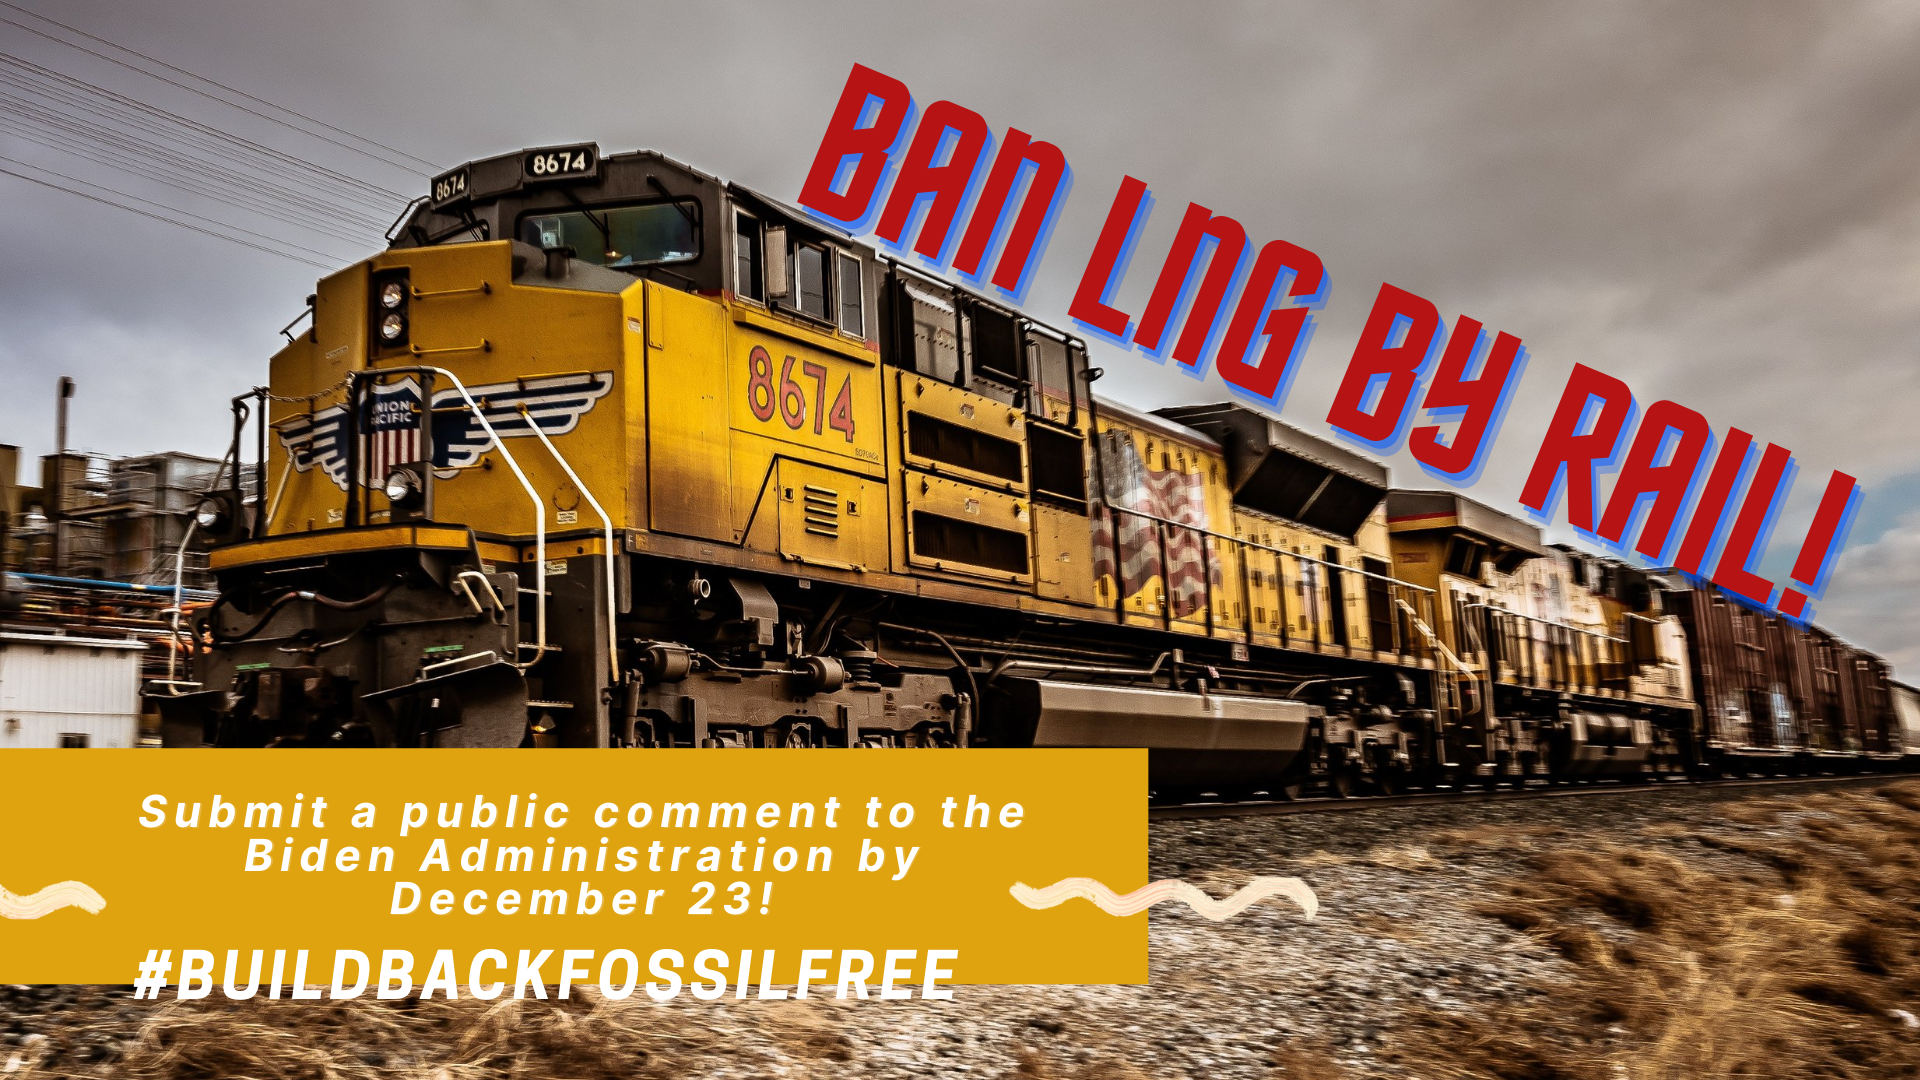 Ban LNG by rail!